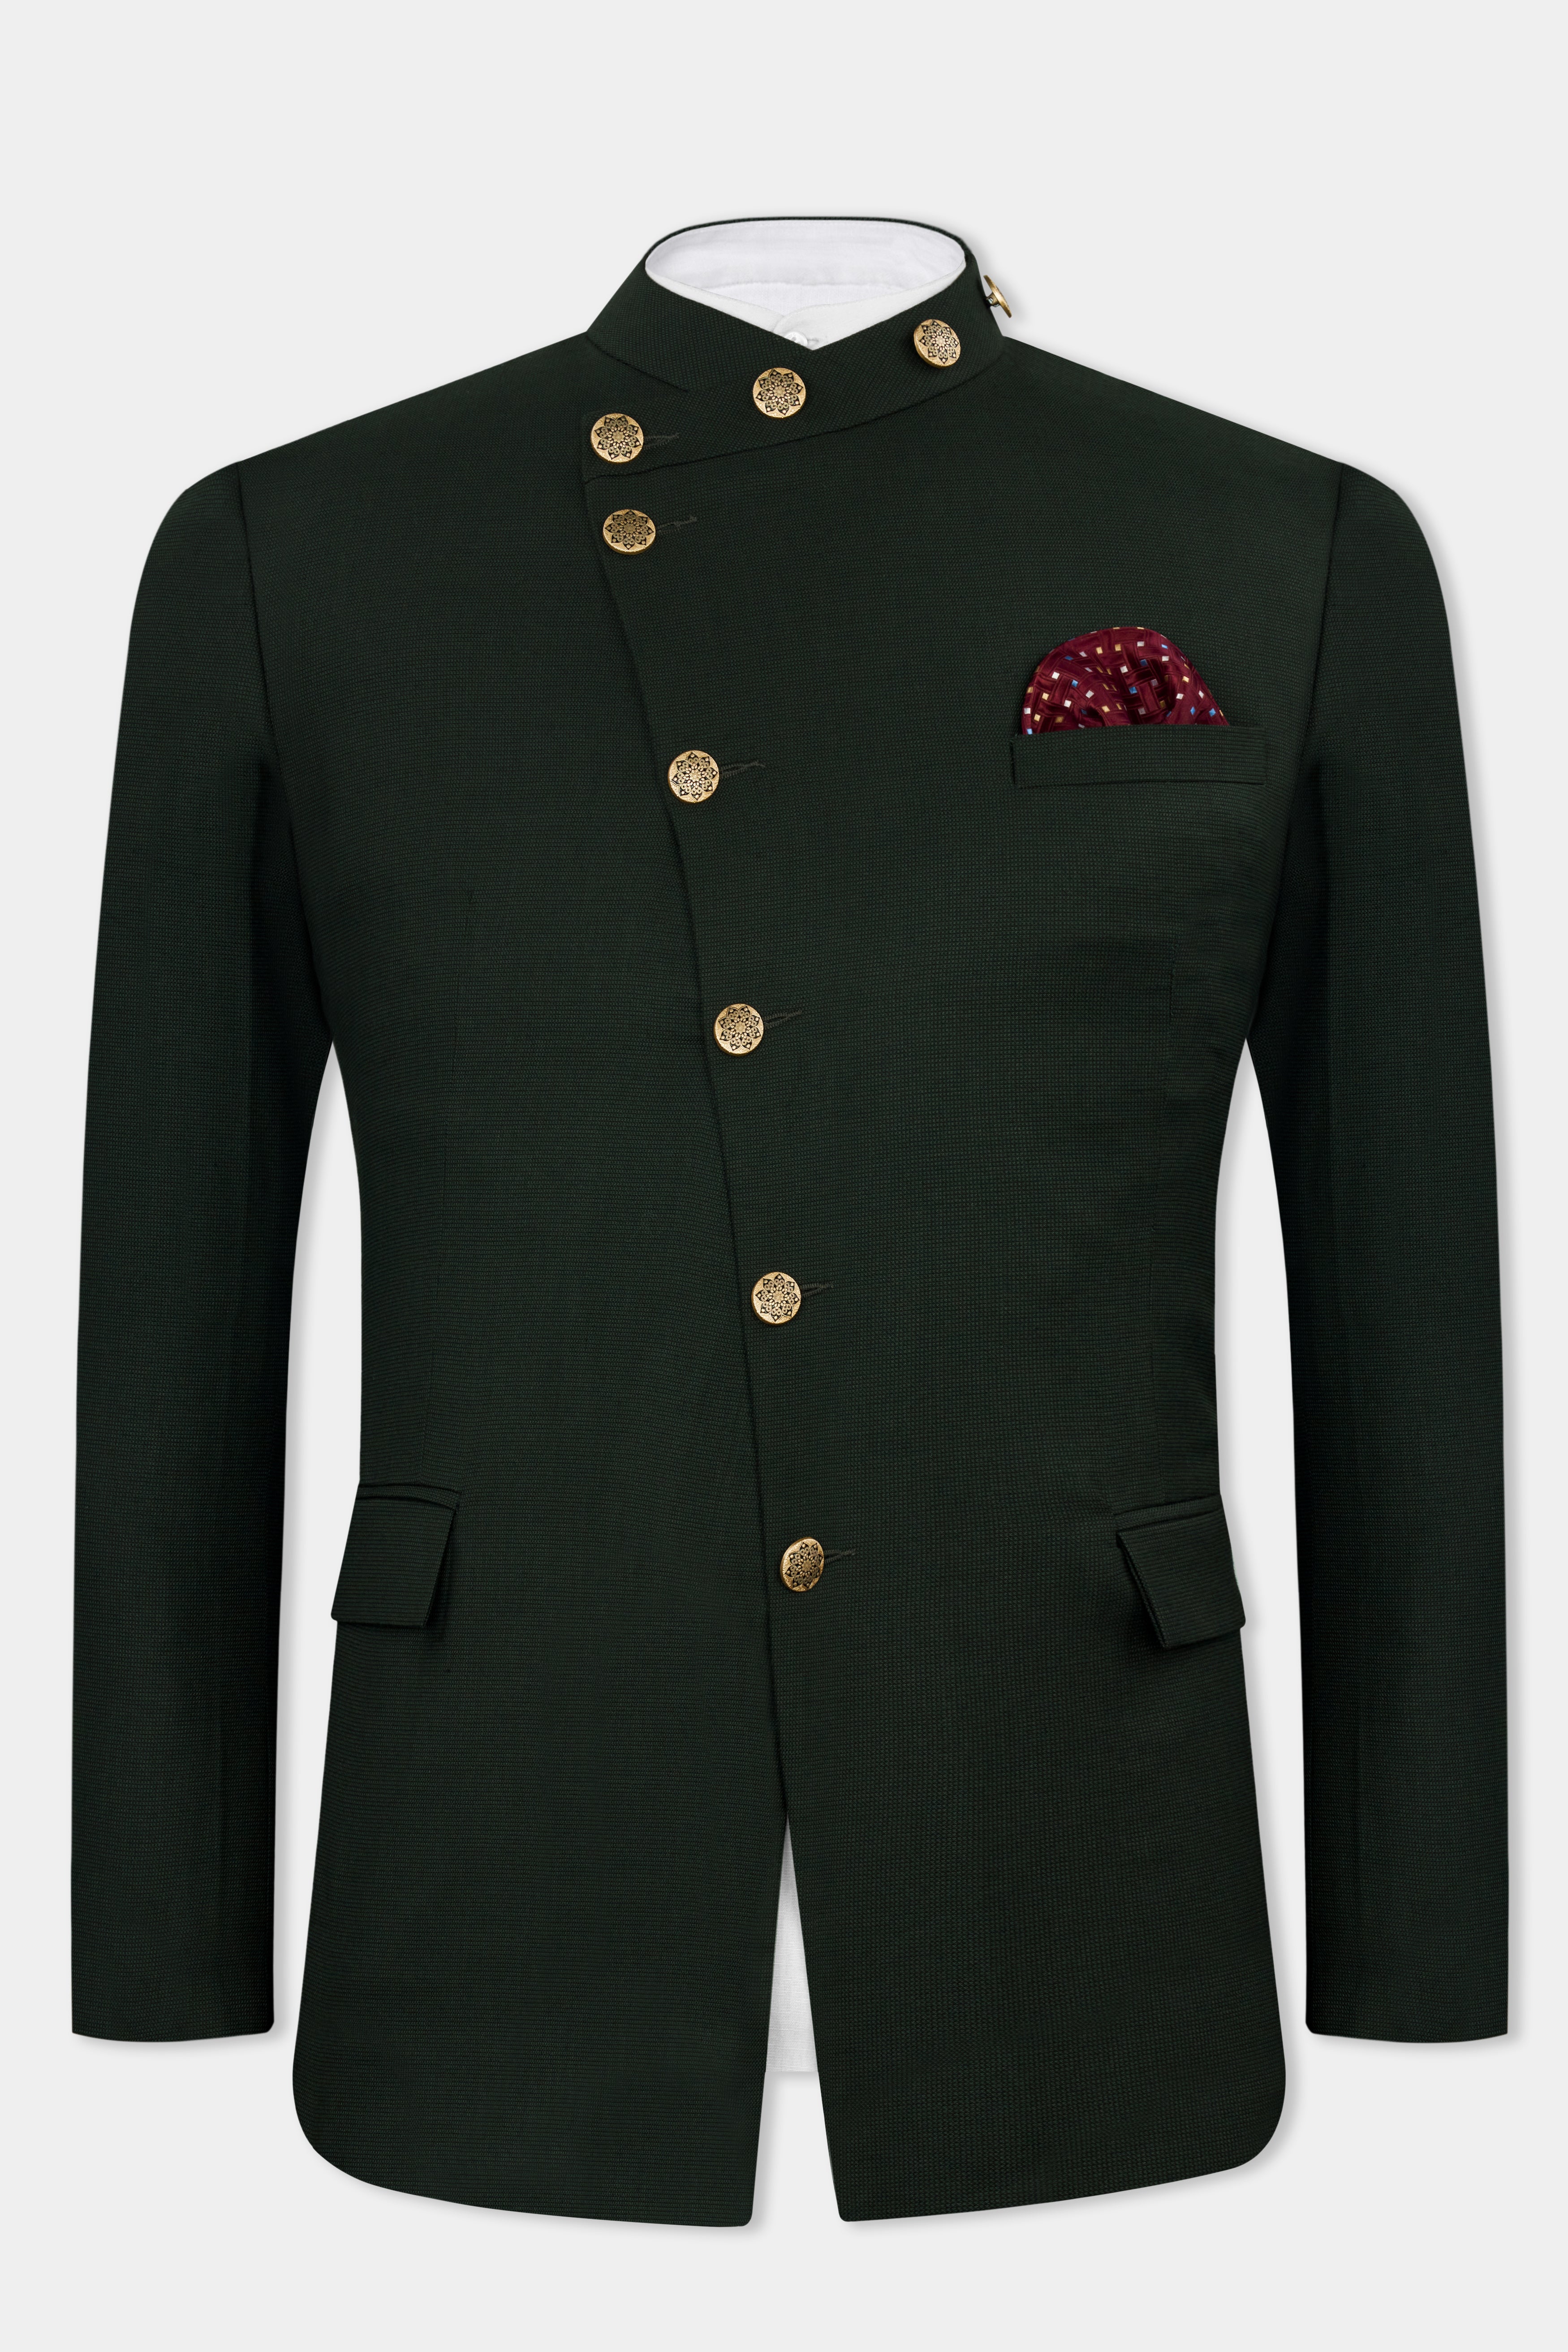 Dartmouth Green Wool Rich Cross Buttoned Bandhgala Designer Suit ST2822-D178-36,ST2822-D178-38,ST2822-D178-40,ST2822-D178-42,ST2822-D178-44,ST2822-D178-46,ST2822-D178-48,ST2822-D178-50,ST2822-D178-52,ST2822-D178-54,ST2822-D178-56,ST2822-D178-58,ST2822-D178-60